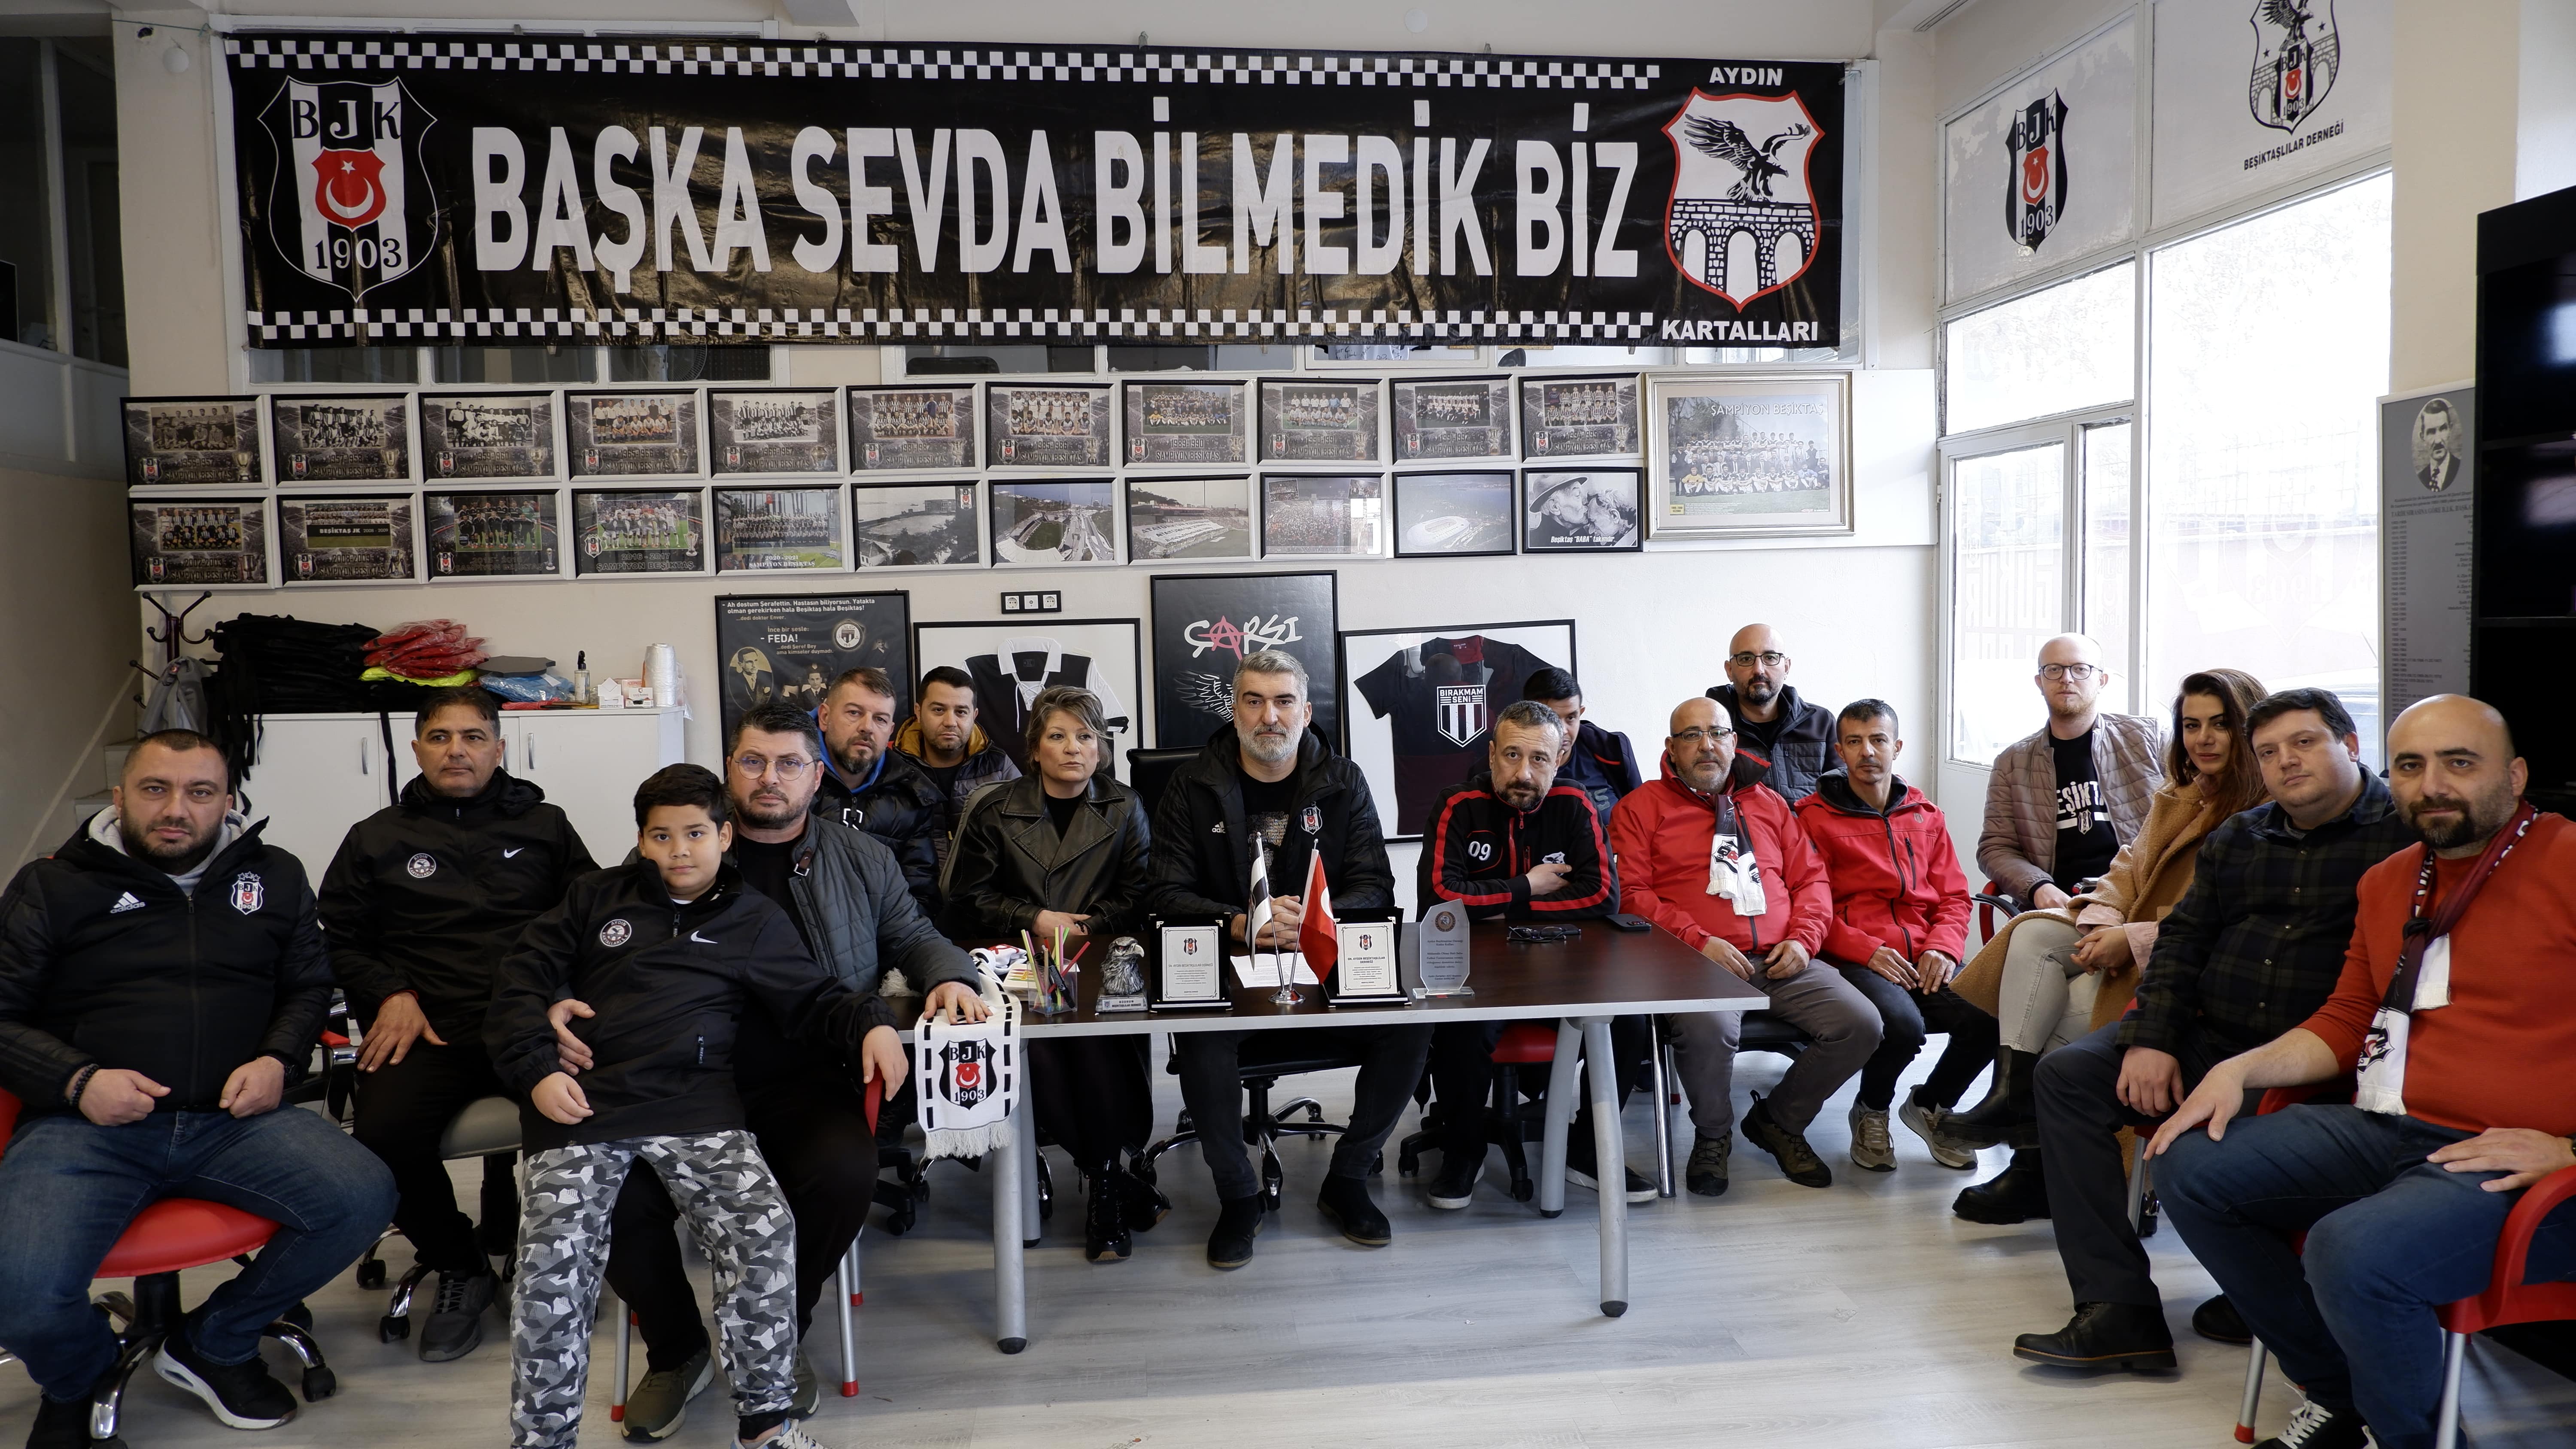 Aydın Beşiktaşlılar Derneği'nden saygısızlığa tepki